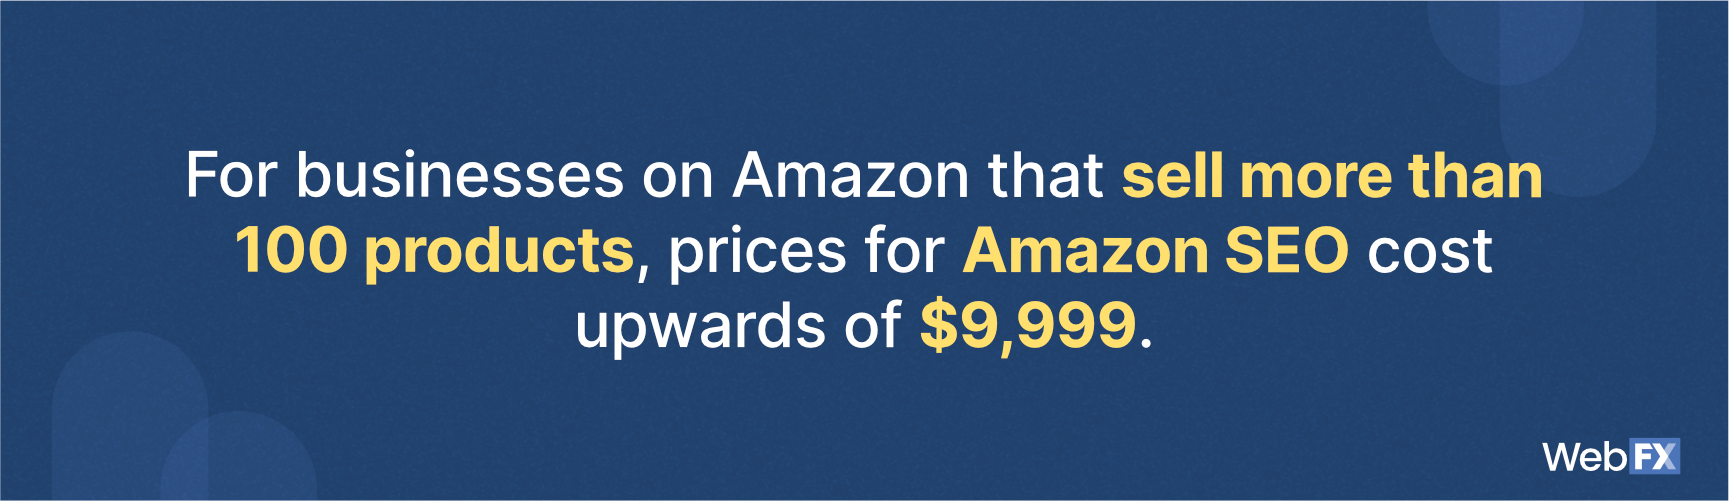 亚马逊搜索引擎优化定价的企业出售100多个产品